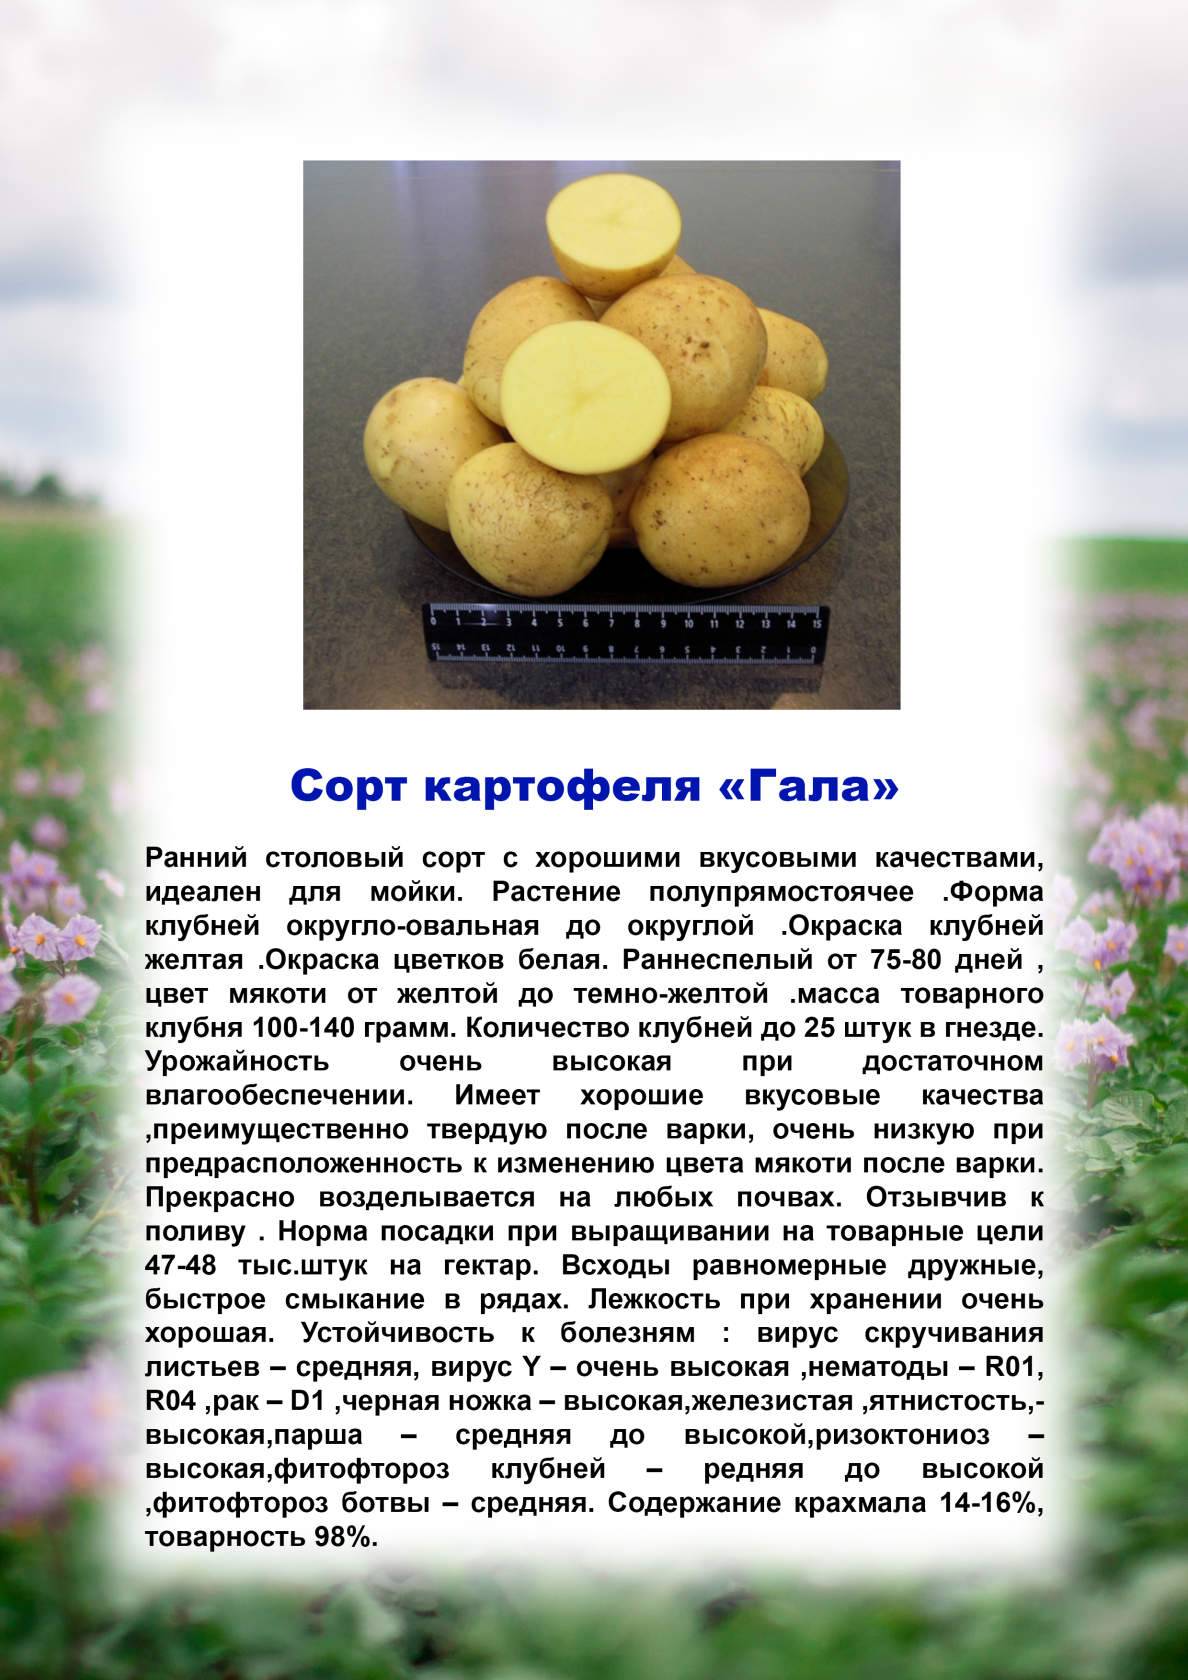 Сорт картофеля вектор: описание и характеристика белорусского вида, а также фото данного корнеплода и пошаговая инструкция по выращиванию